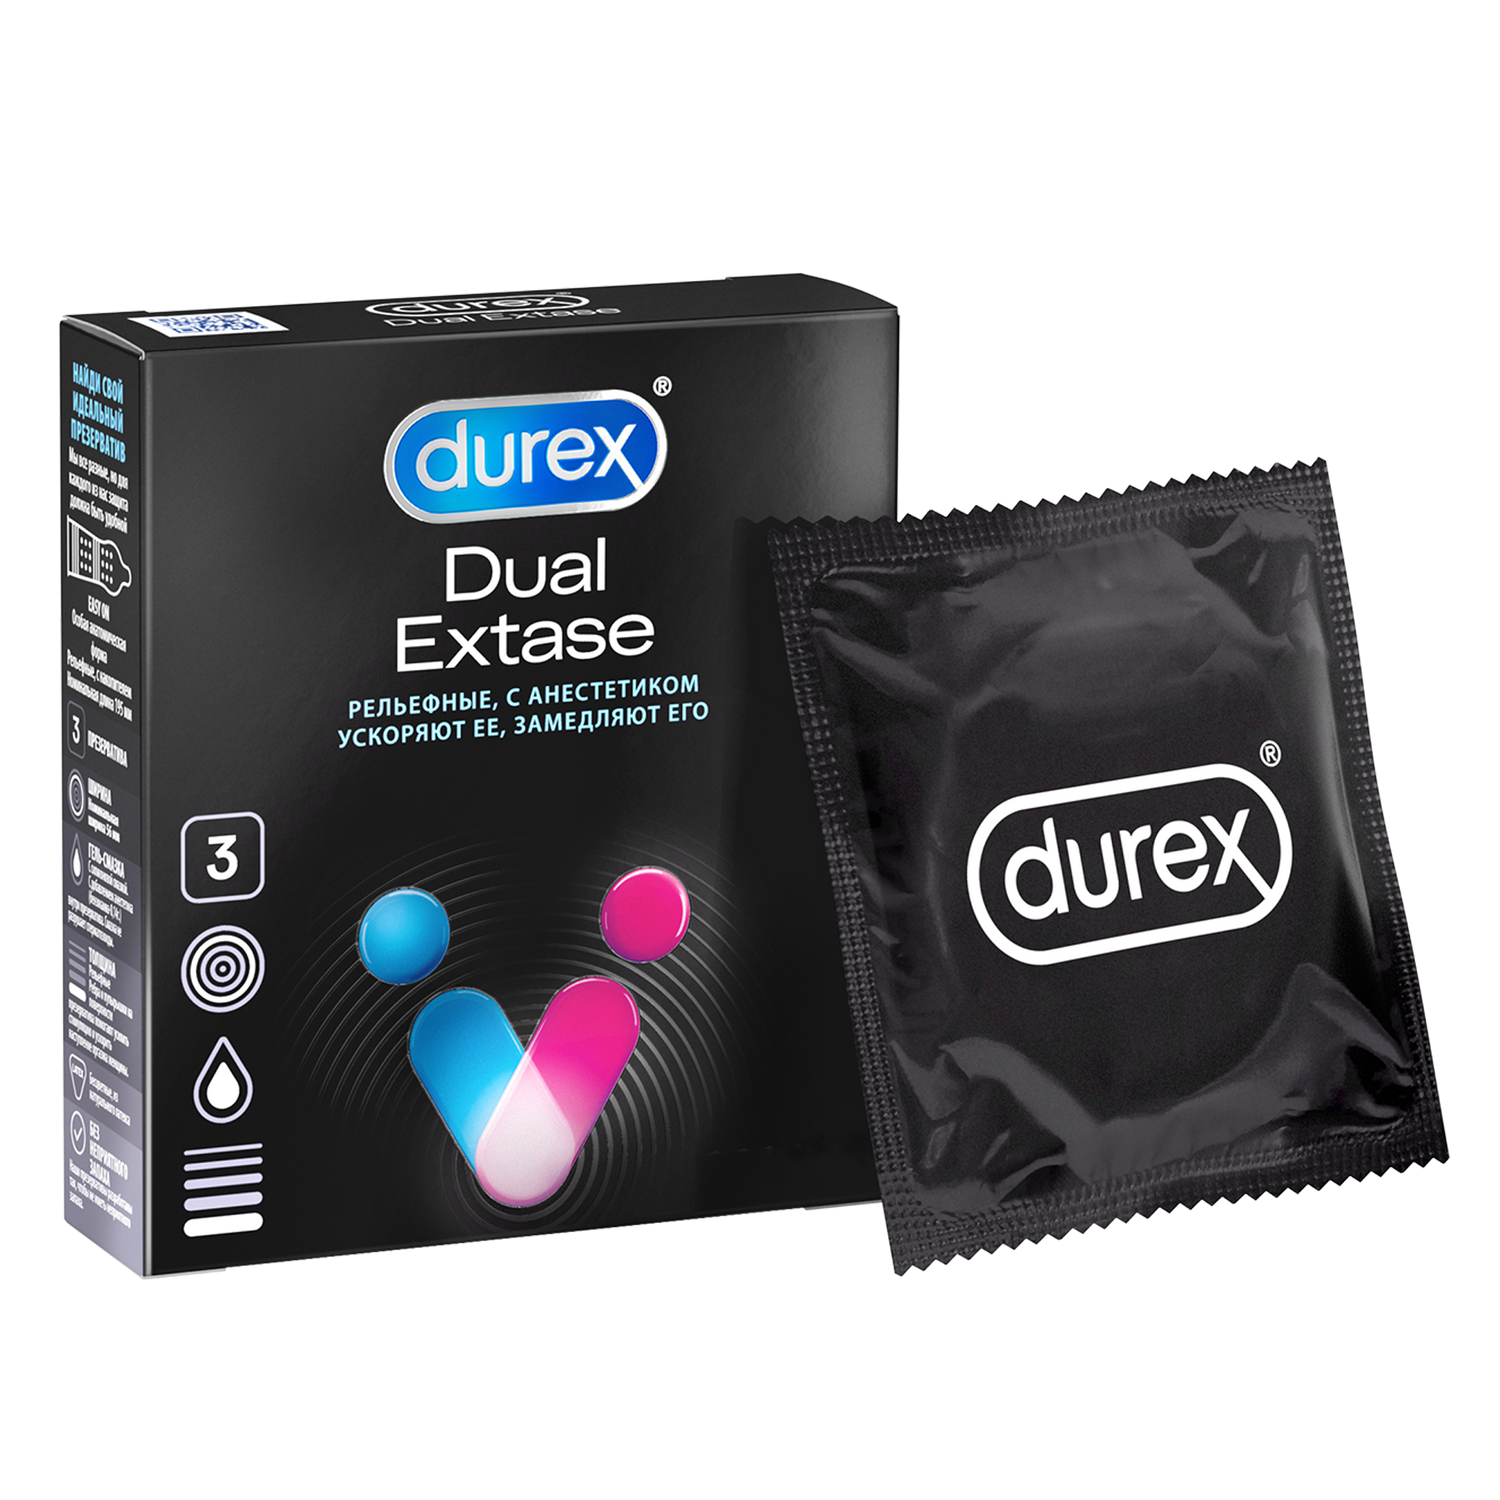 Презервативы Durex Dual Extase, рельефные с анестетиком, 3 шт. презервативы ganzo extase 3 шт смазка sexnow classic 50 мл